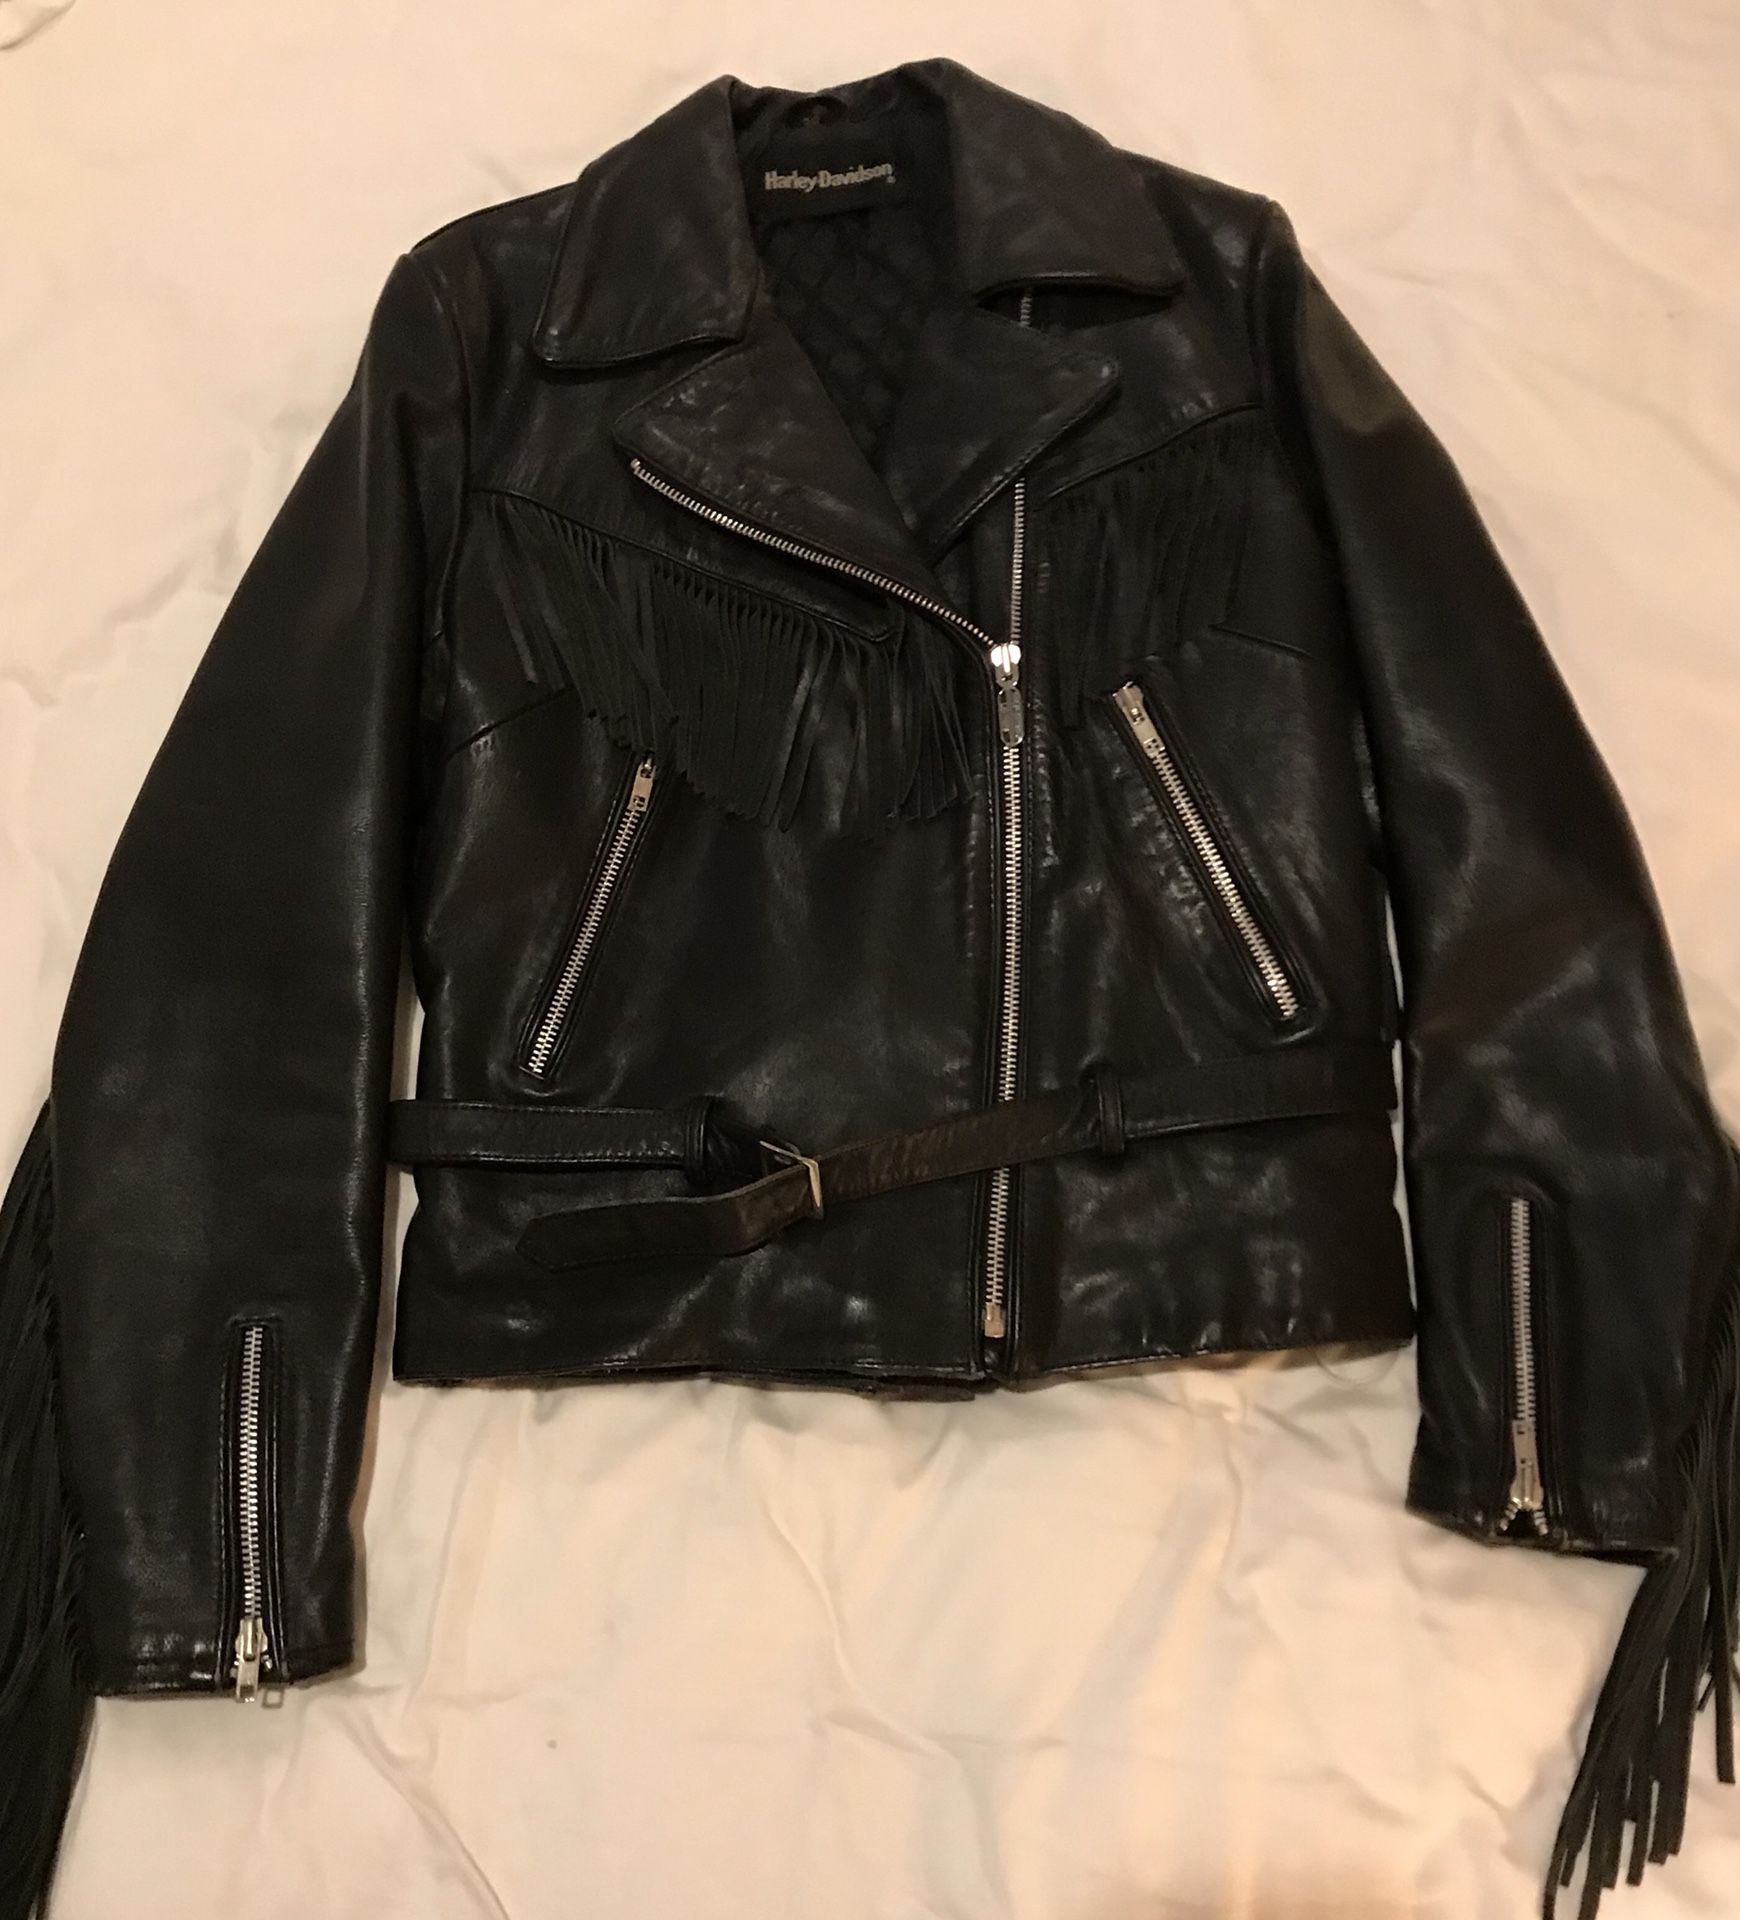 Harley Davidson vintage women’s leather jacket. worn once